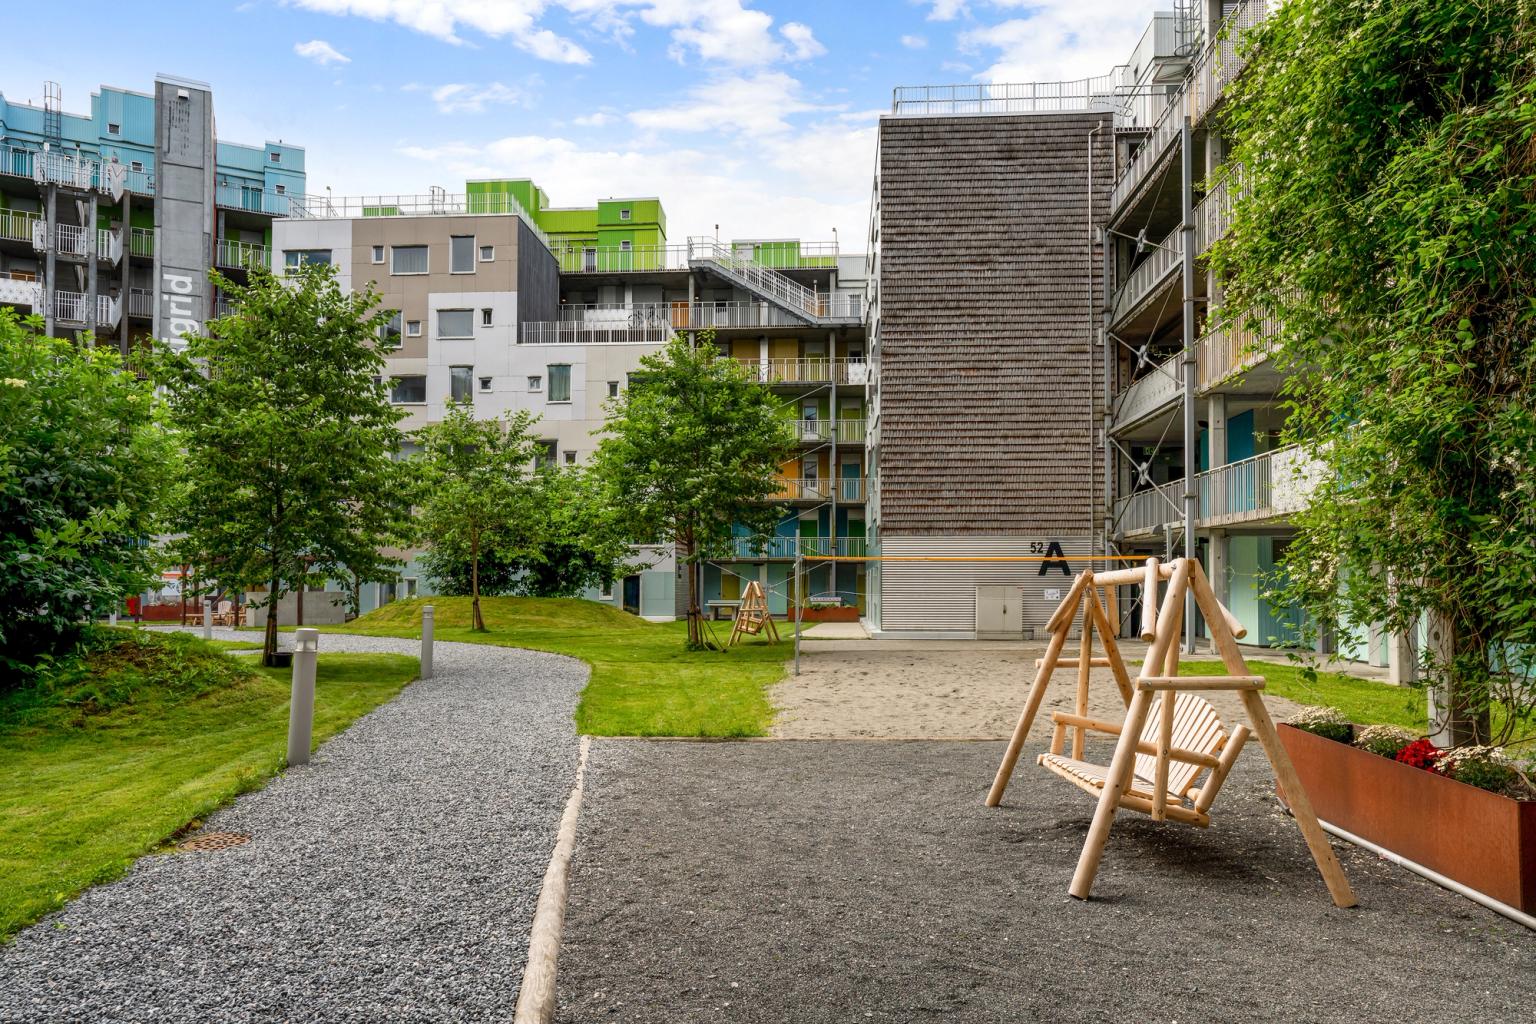 Outdoor area of Grønneviksøren Student Housing.